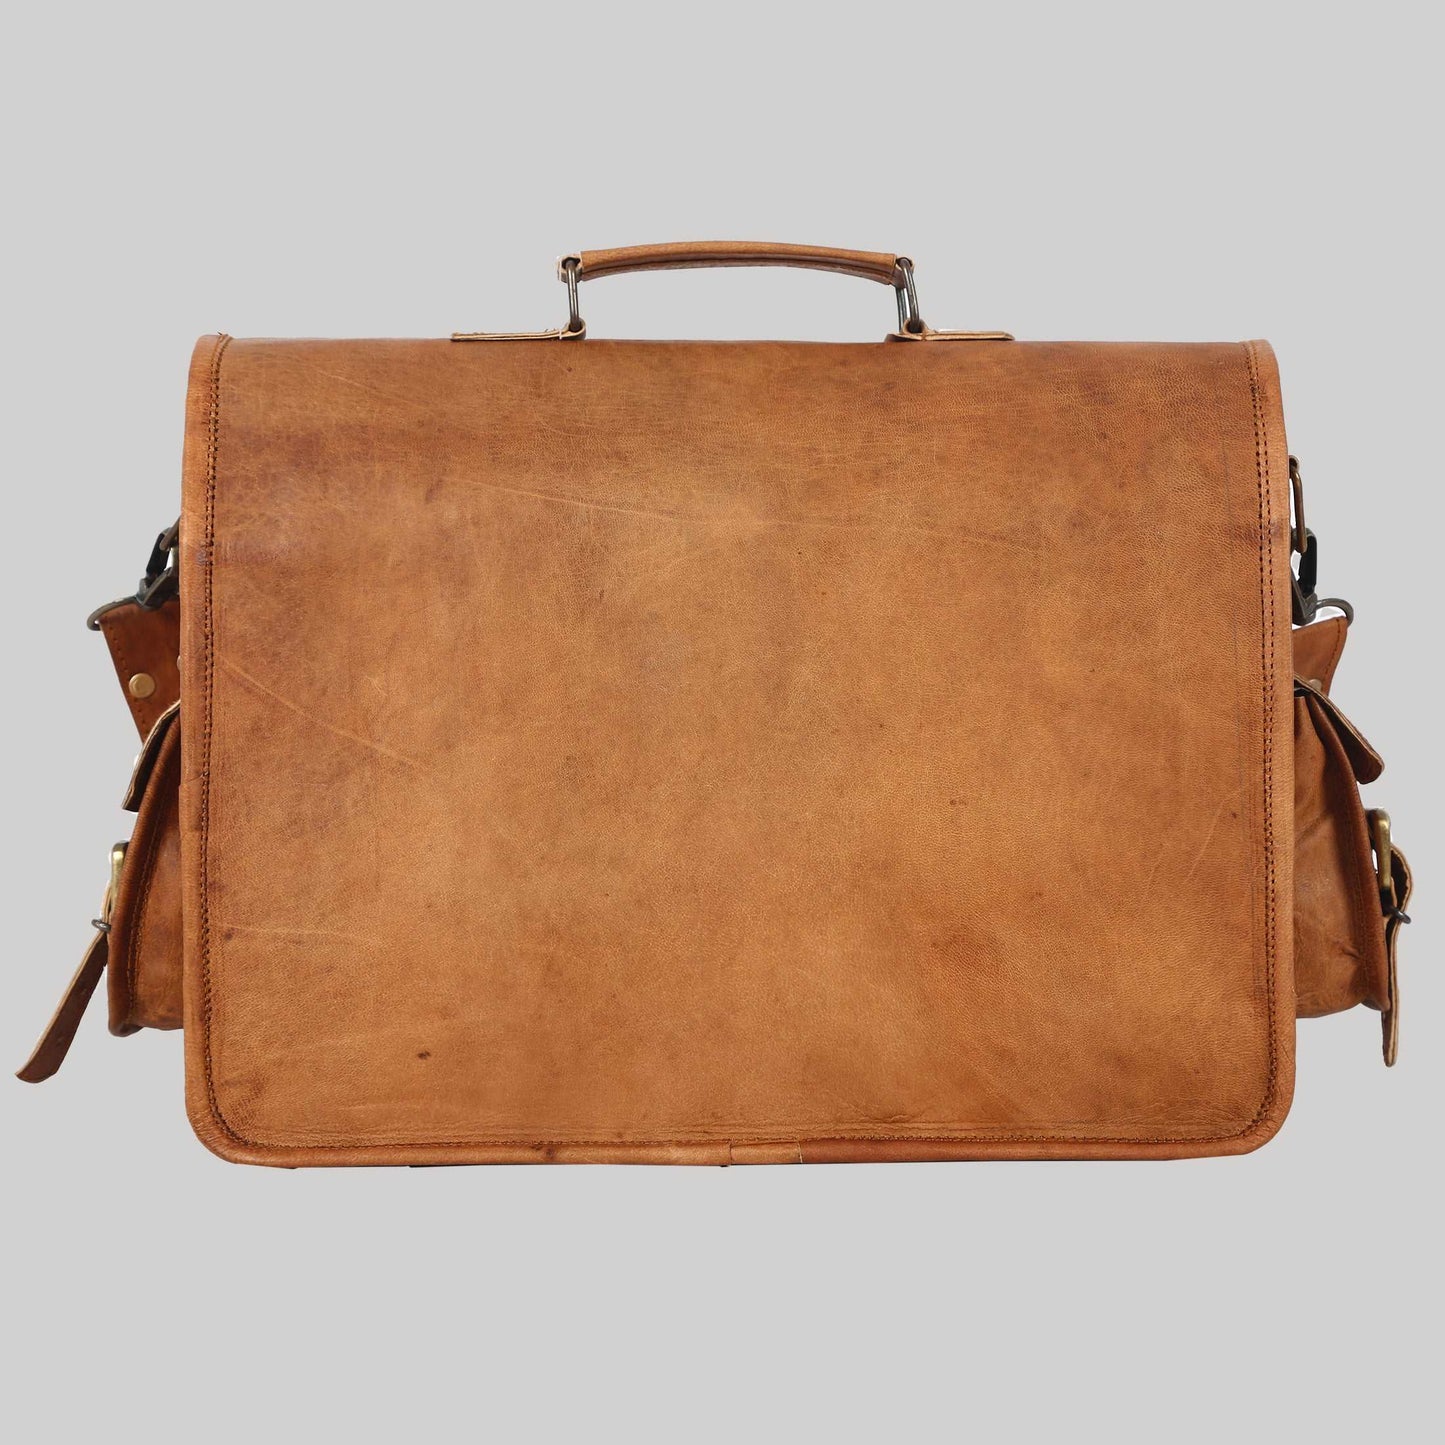 Leather Messenger Bag for Men Women - Full Grain Leather Laptop Satchel bag Office Shoulder Bag